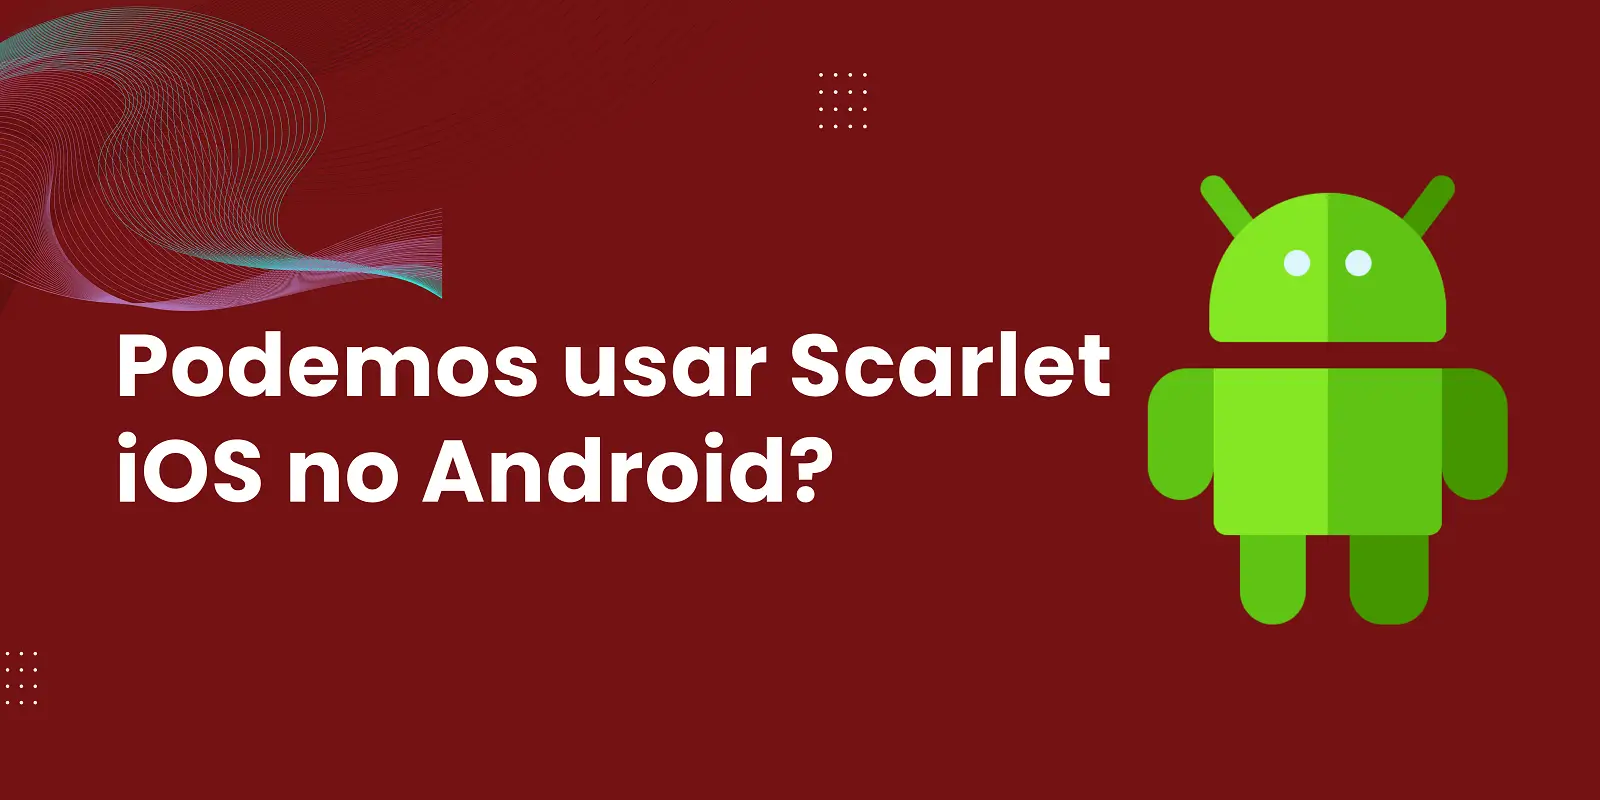 Podemos usar Scarlet iOS no Android? 100% testado